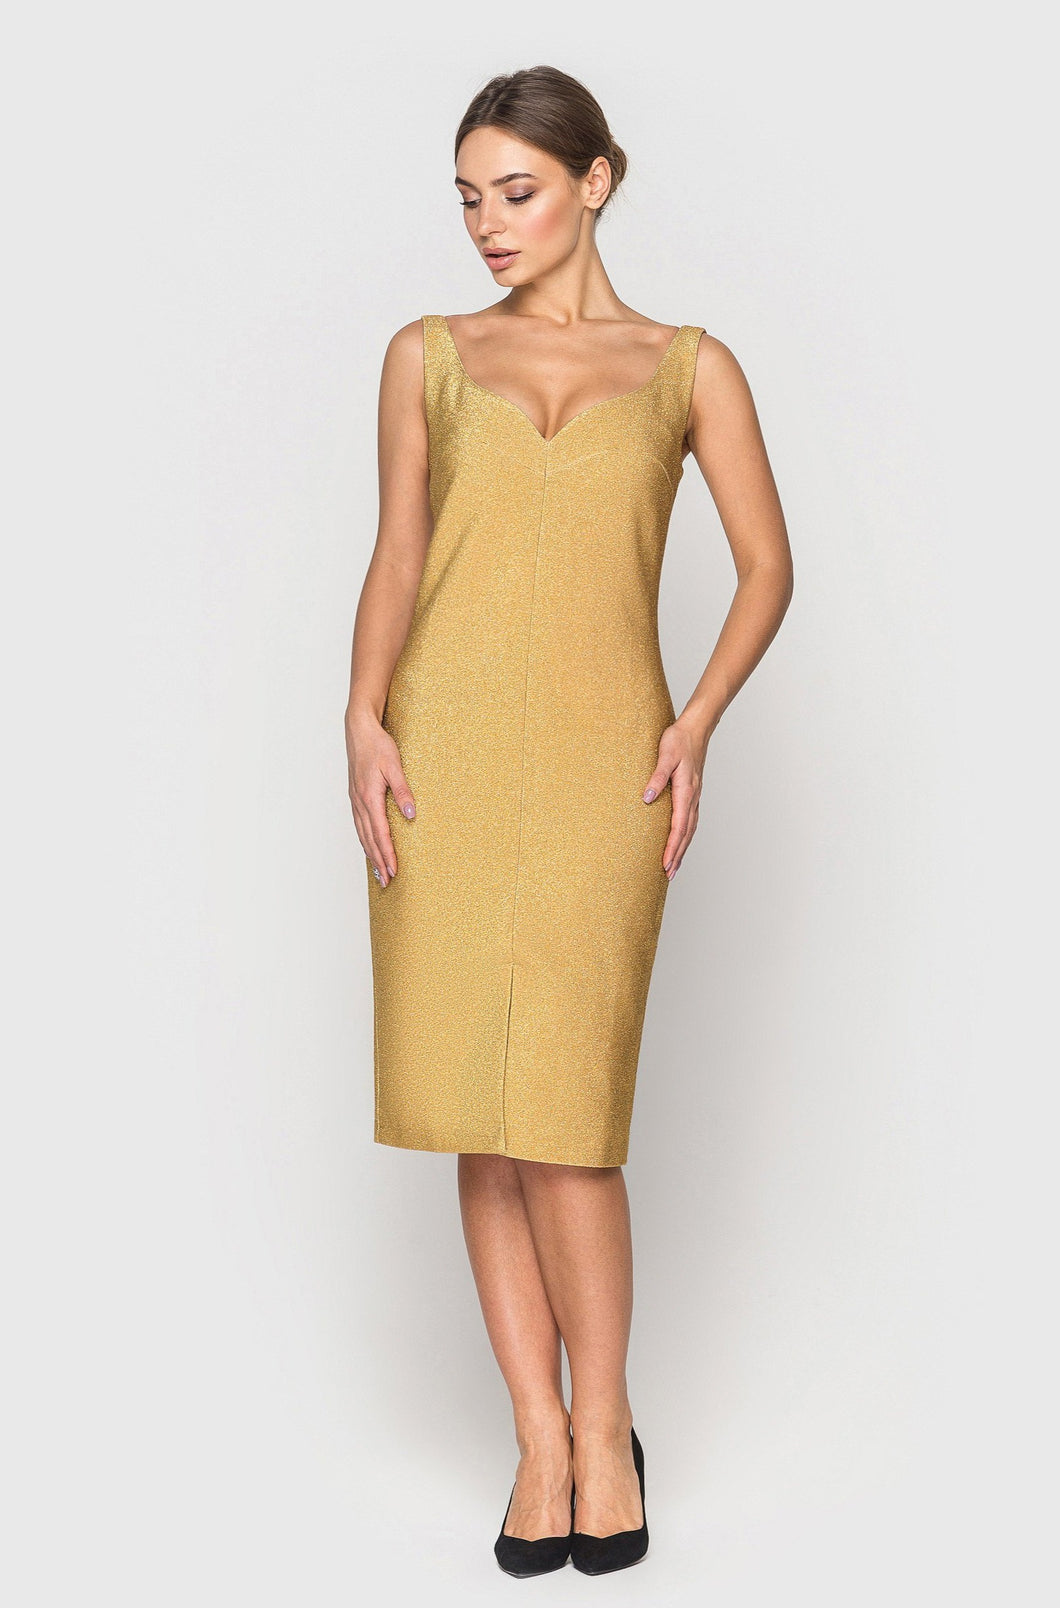 Gold lurex sleeveless pencil dress